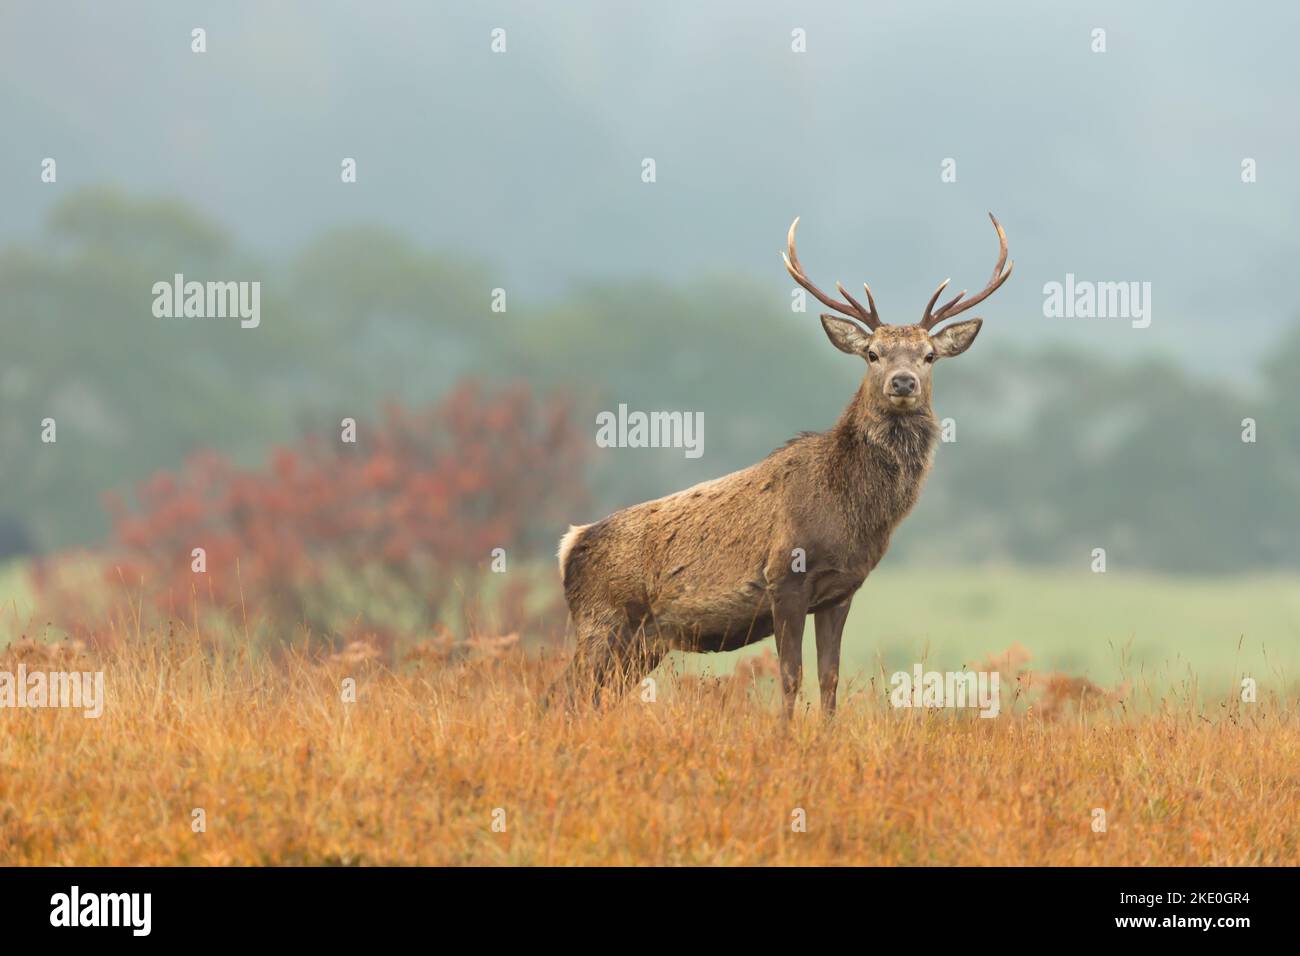 Une belle et majestueuse alerte de cerf rouge et face à l'automne, Strathconon Estate, Scottish Highlands. Nom scientifique: Cervus elaphus. Bba flou Banque D'Images